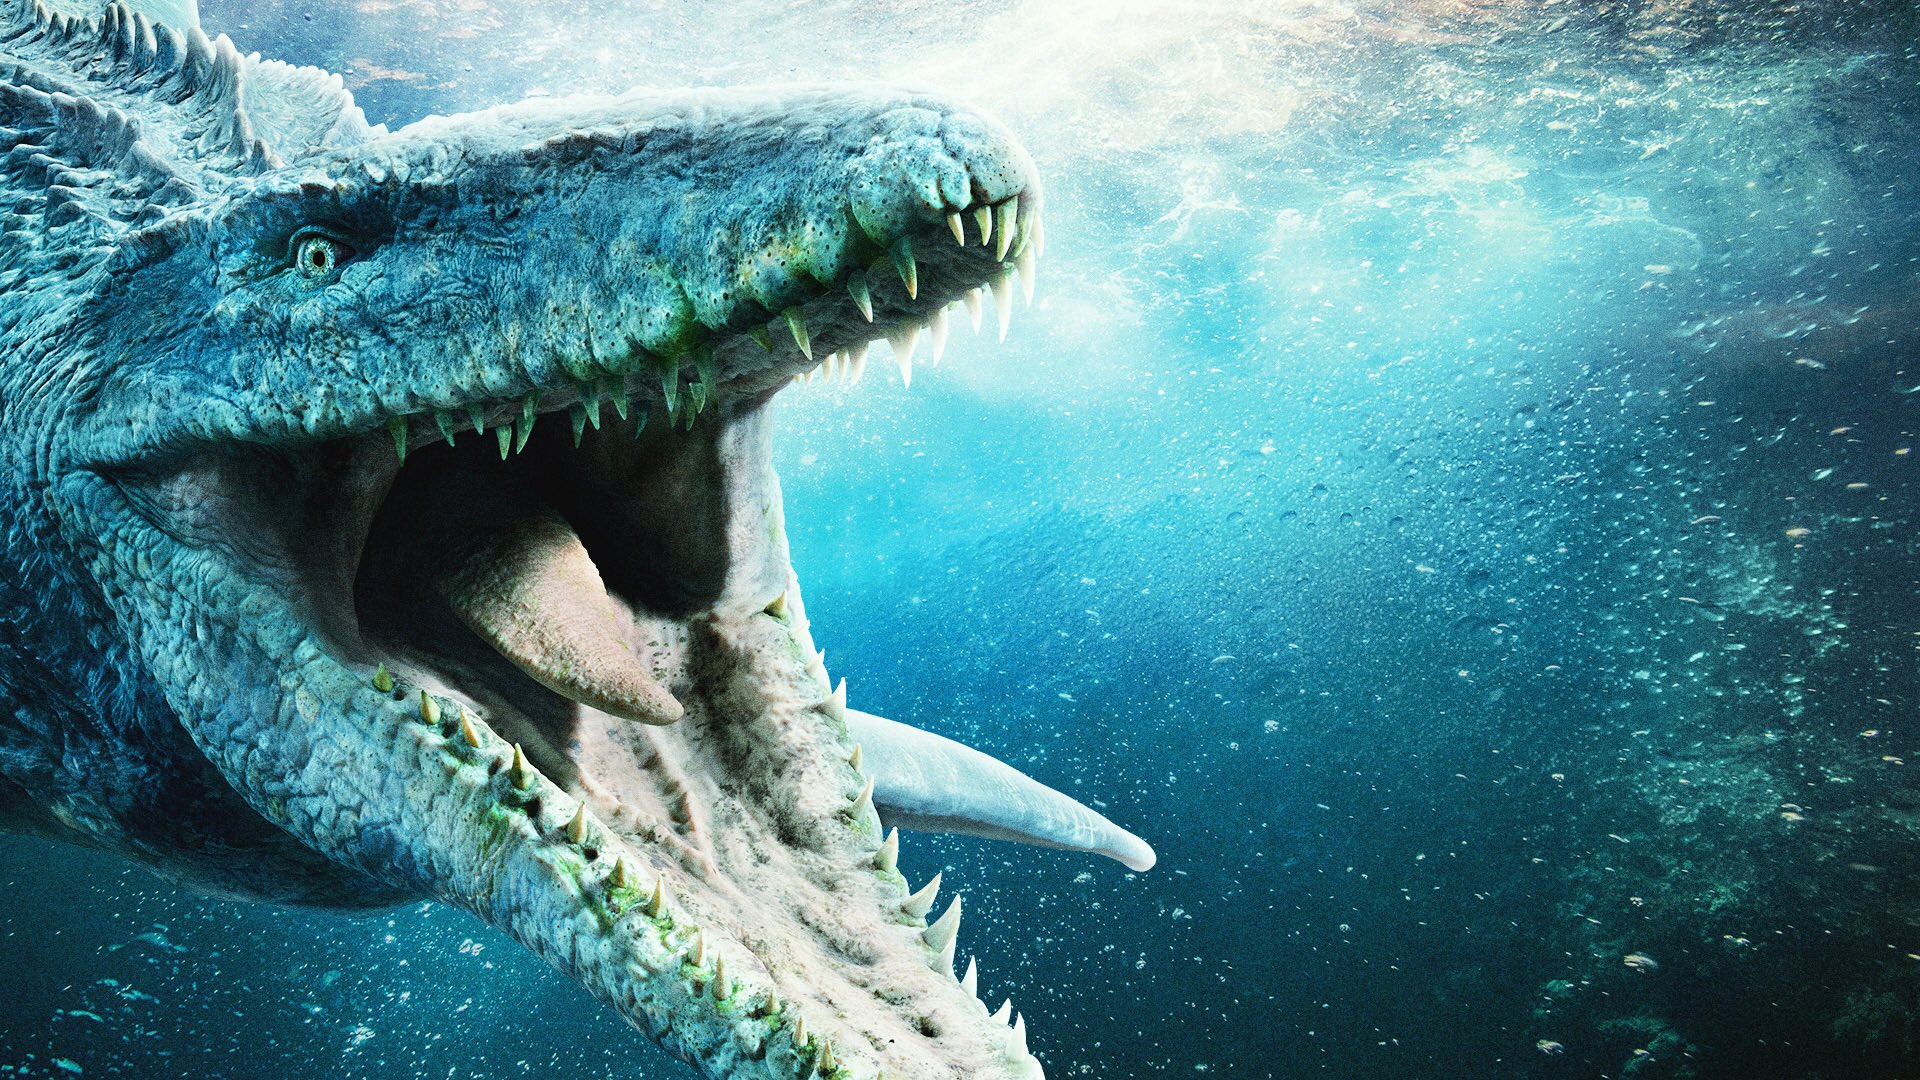 Jurassic World 3 - Underwater dinosaur